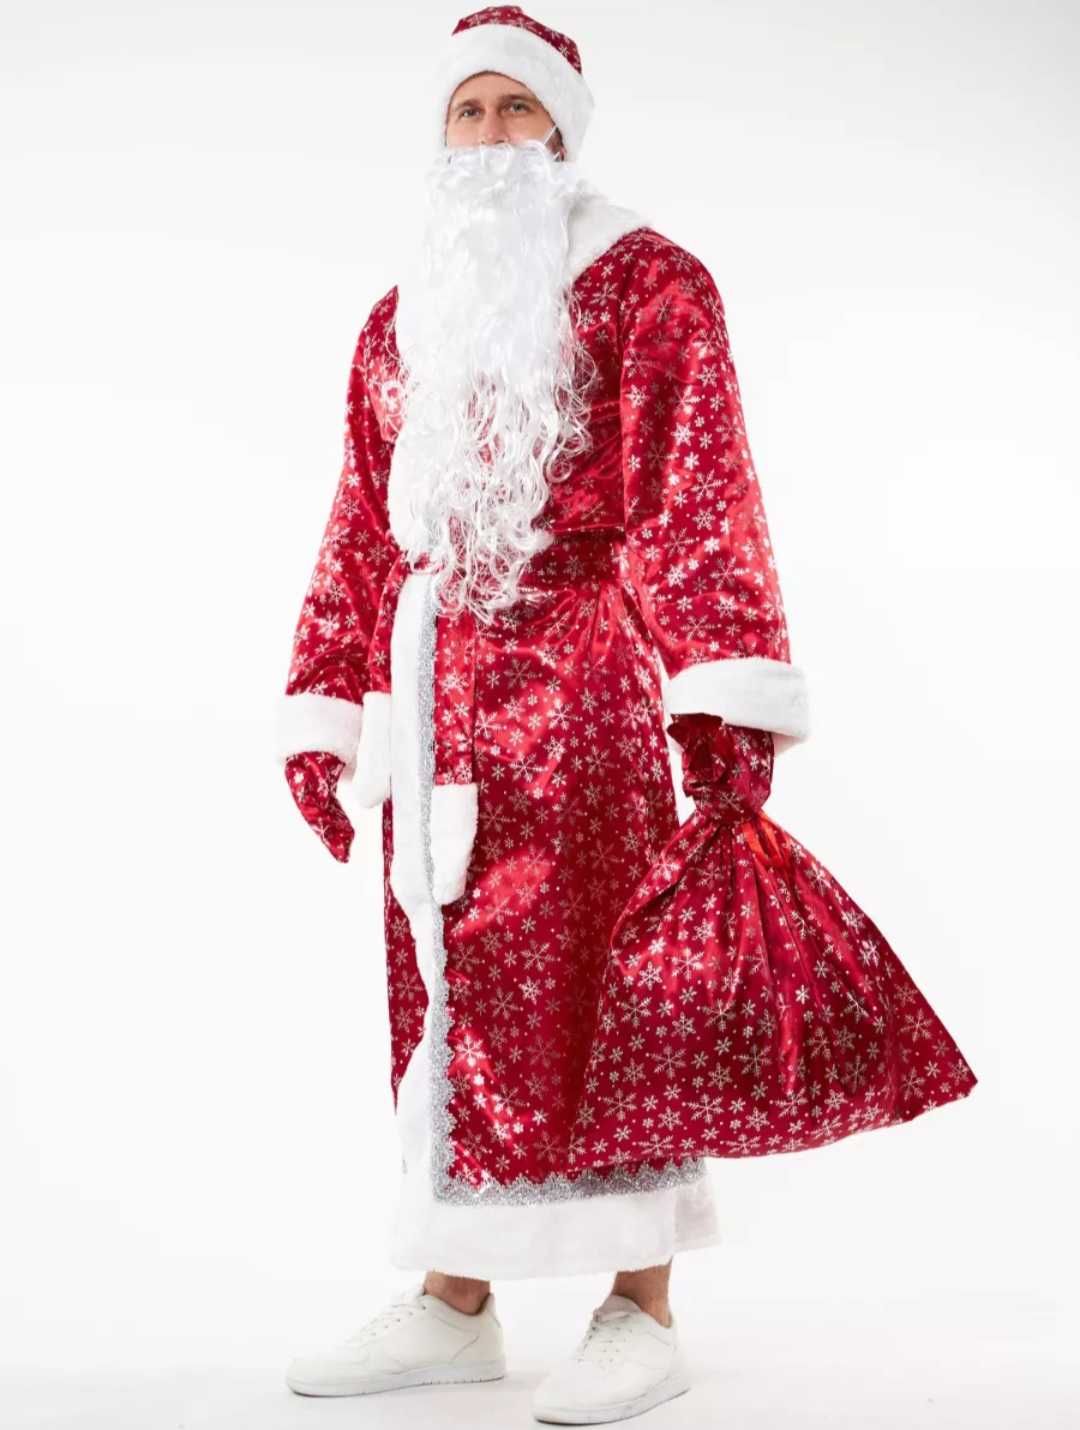 Дед Мороз и Снегурочка костюмы новые по выгодным ценам